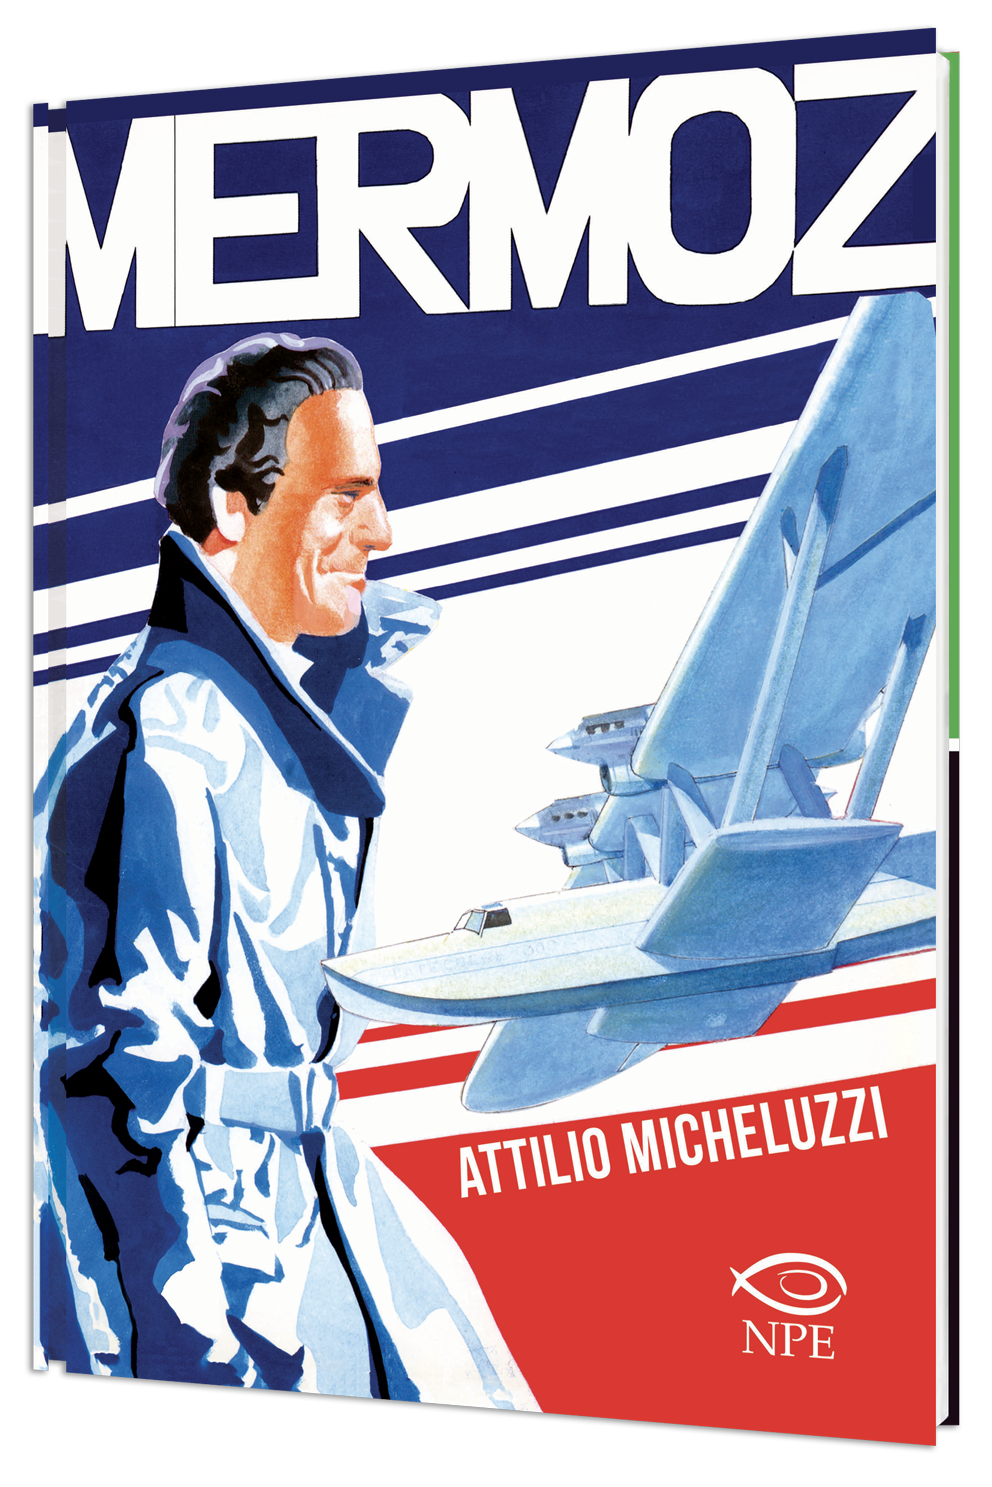 Mermoz di Attilio Micheluzzi: la storia a fumetti del leggendario pilota francese